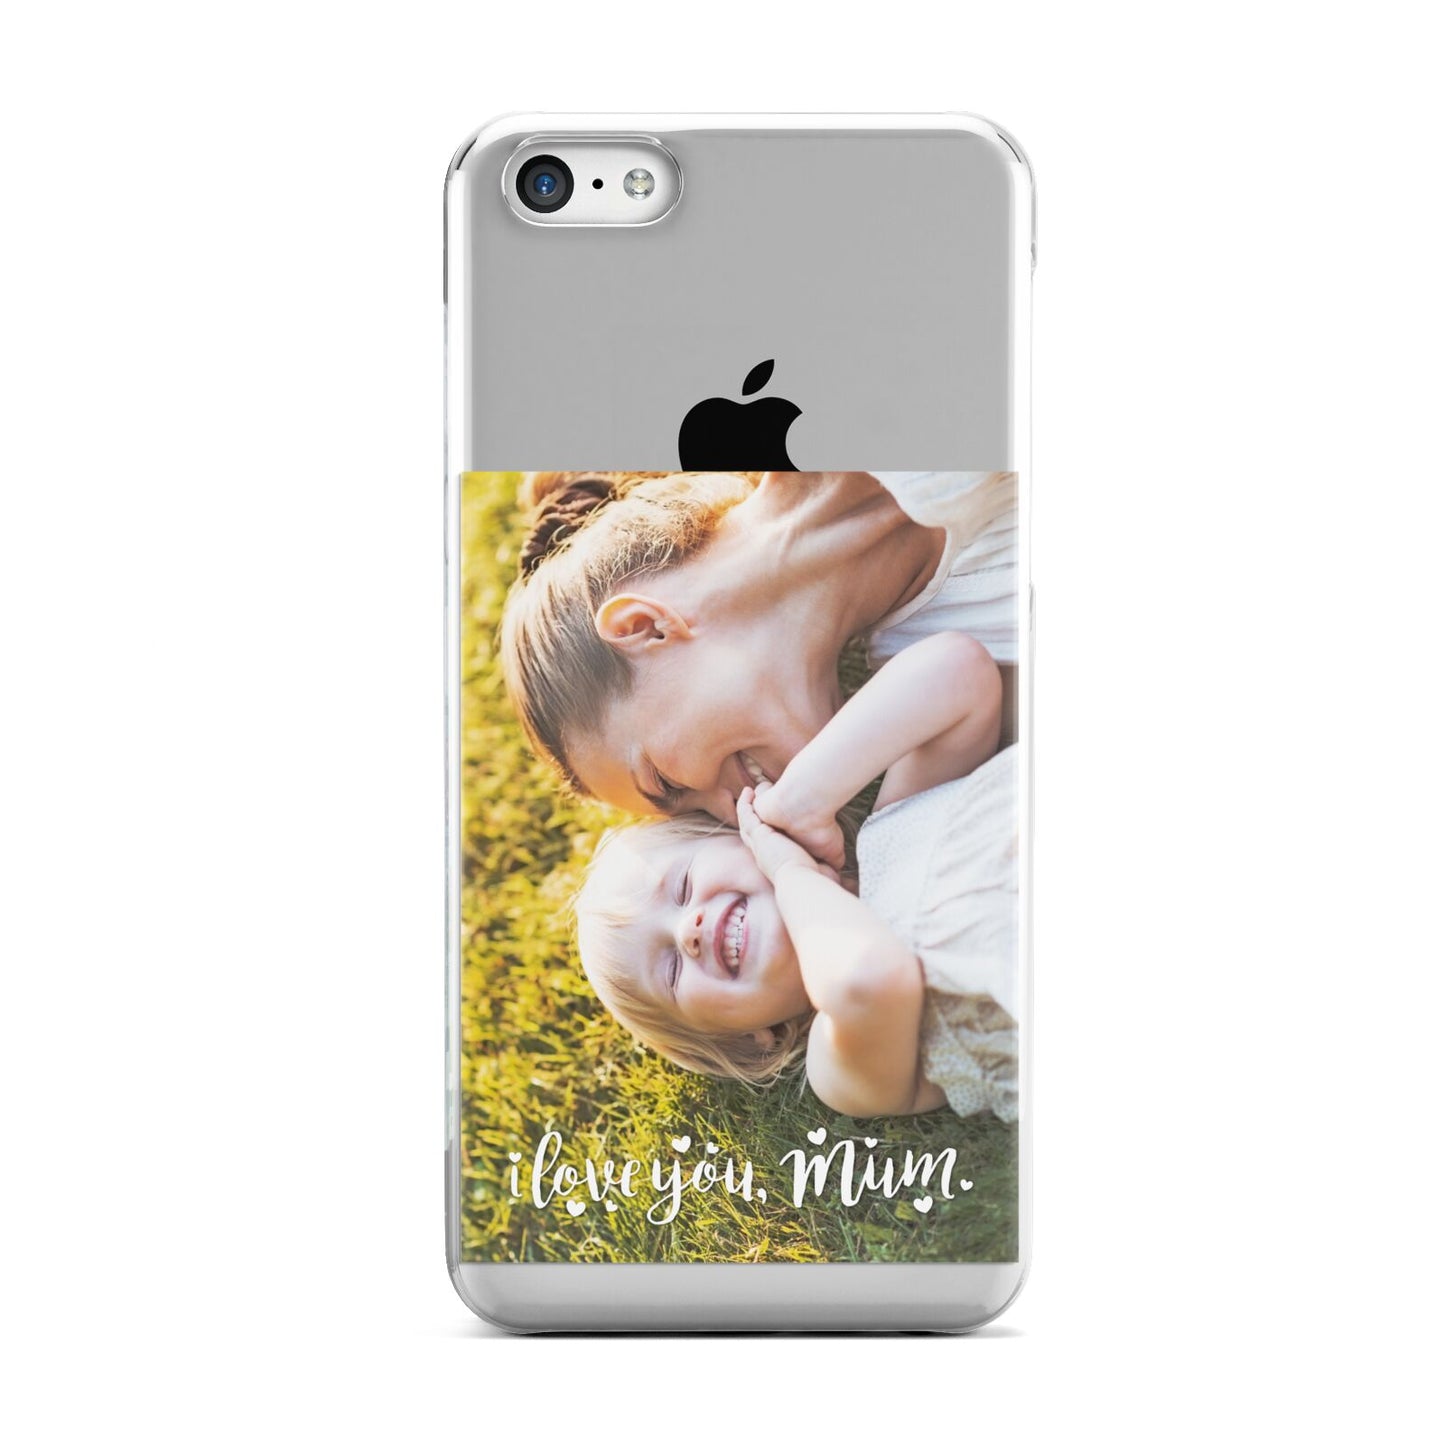 Love You Mum Photo Upload Apple iPhone 5c Case